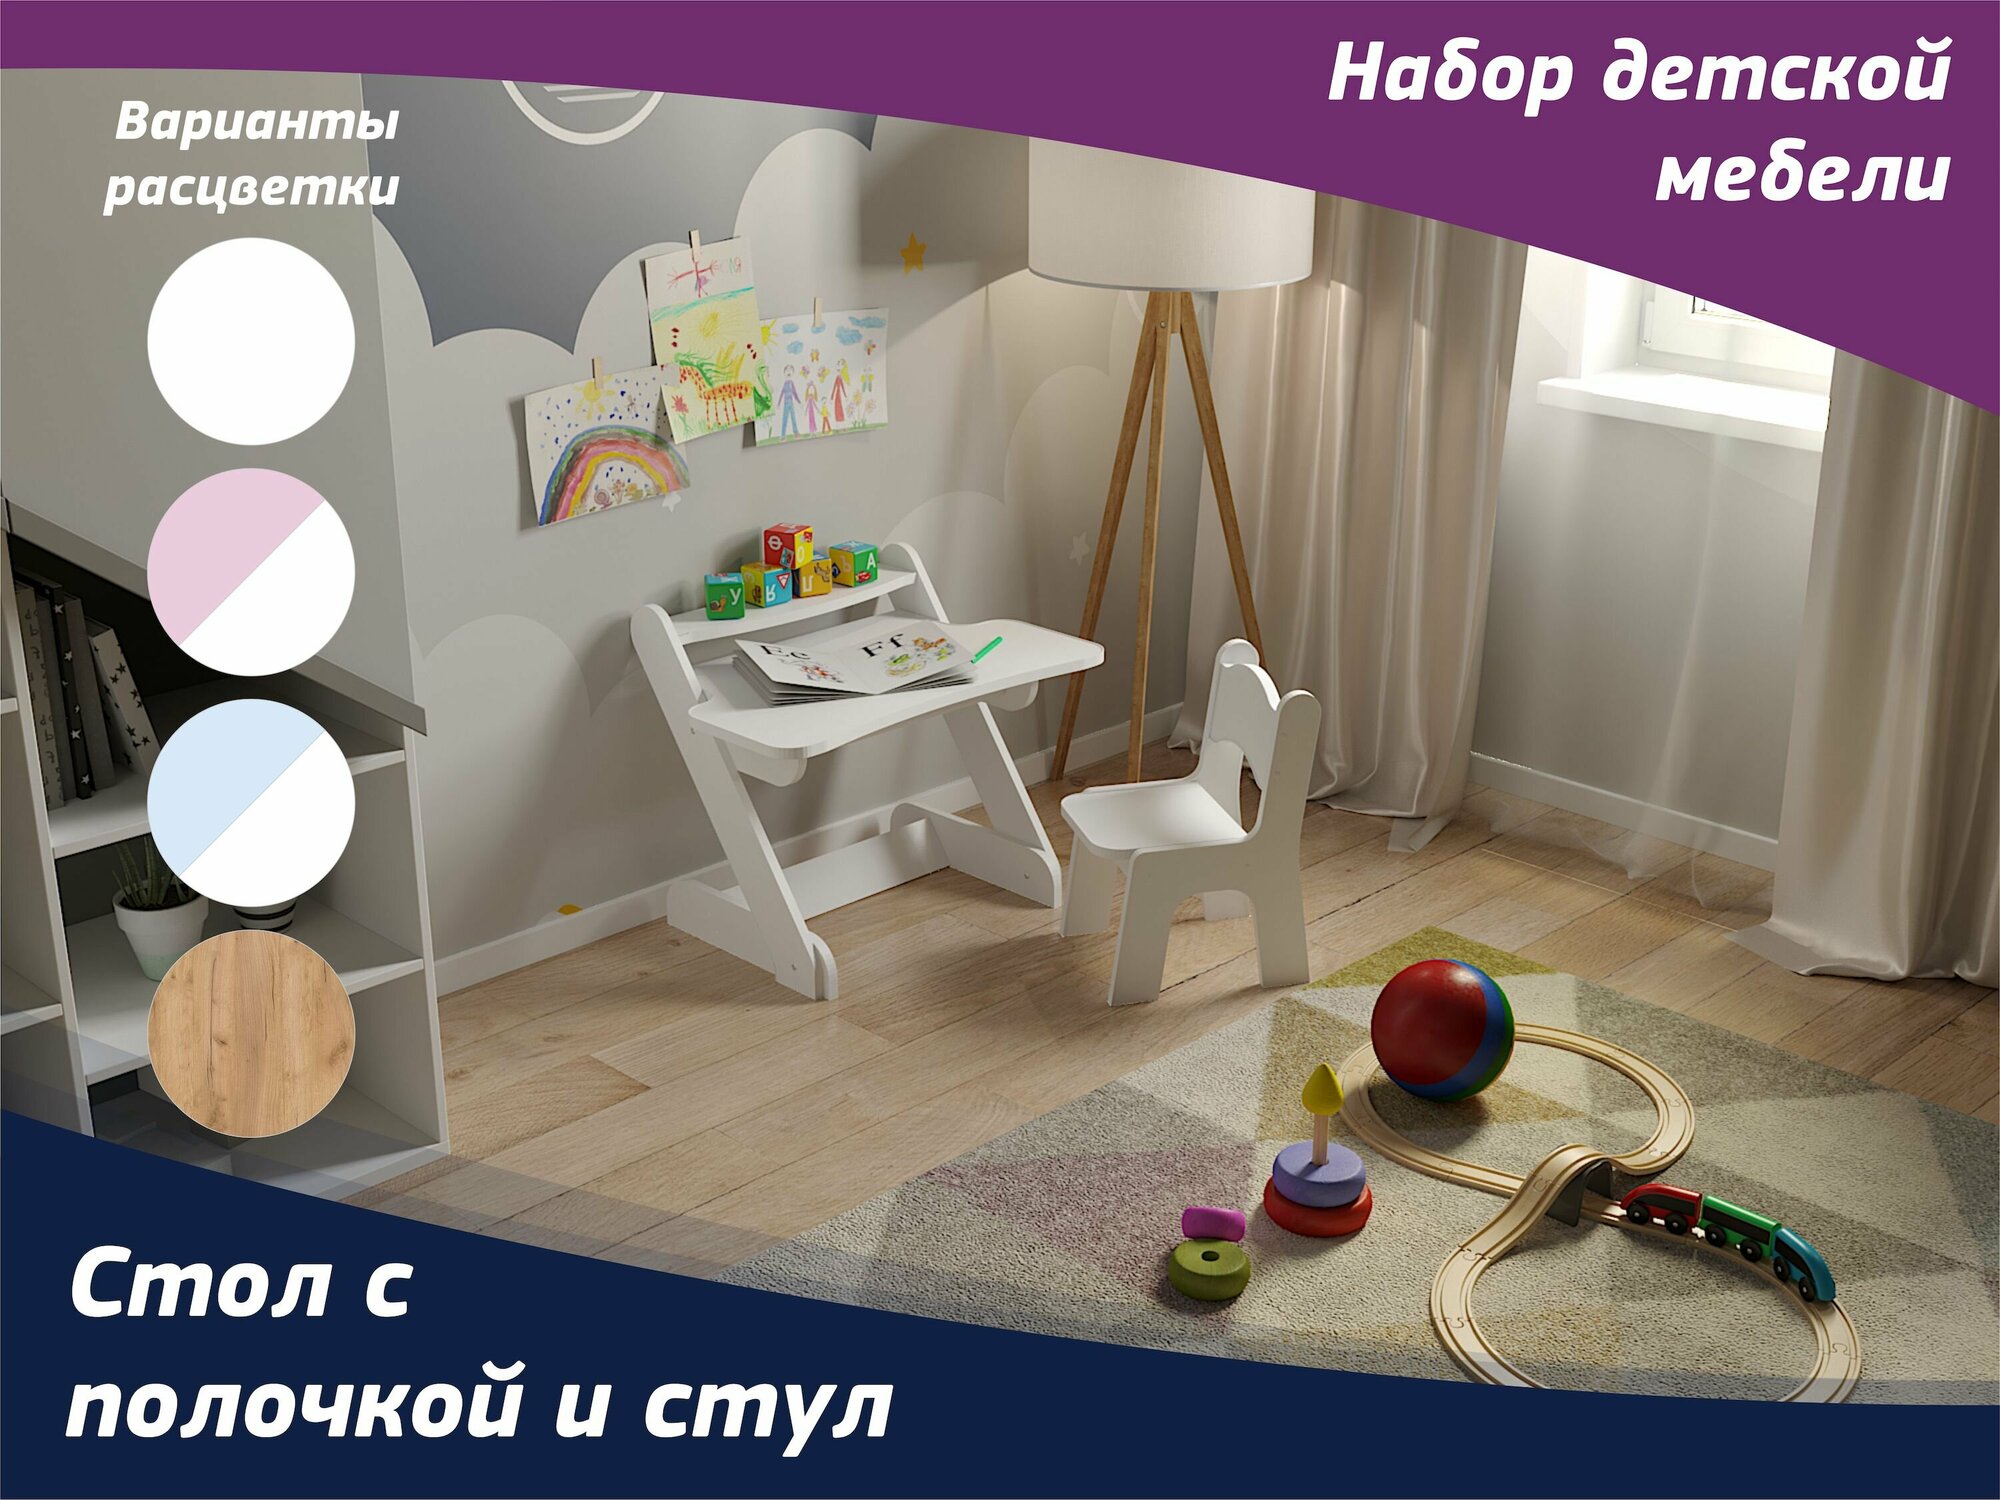 Комплект деткой мебели - стол с полочкой и стул для детей от 1,5 до 5 лет. Цвет набора "Белый".